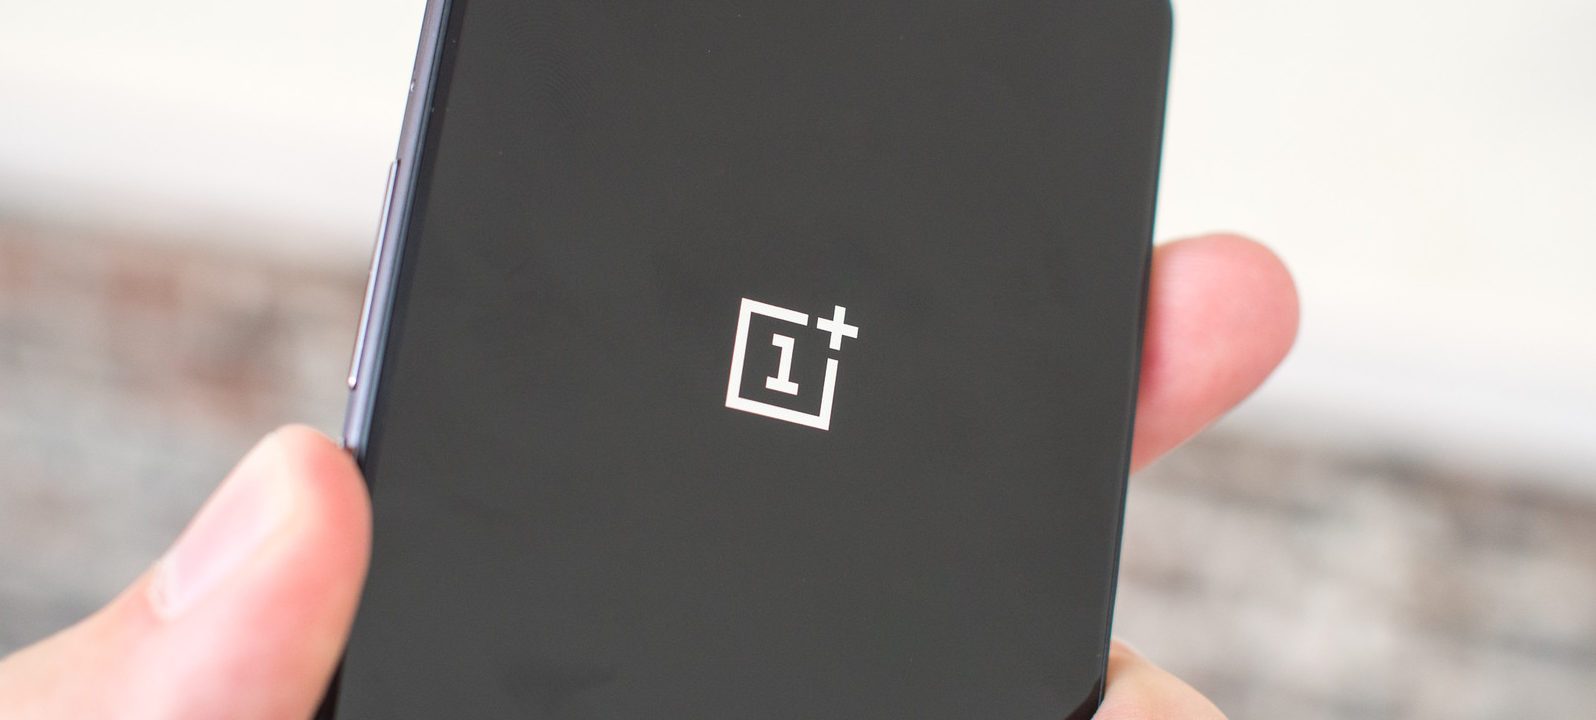 OnePlus 5 manipula los puntos de referencia para obtener puntuaciones más altas, dice XDA